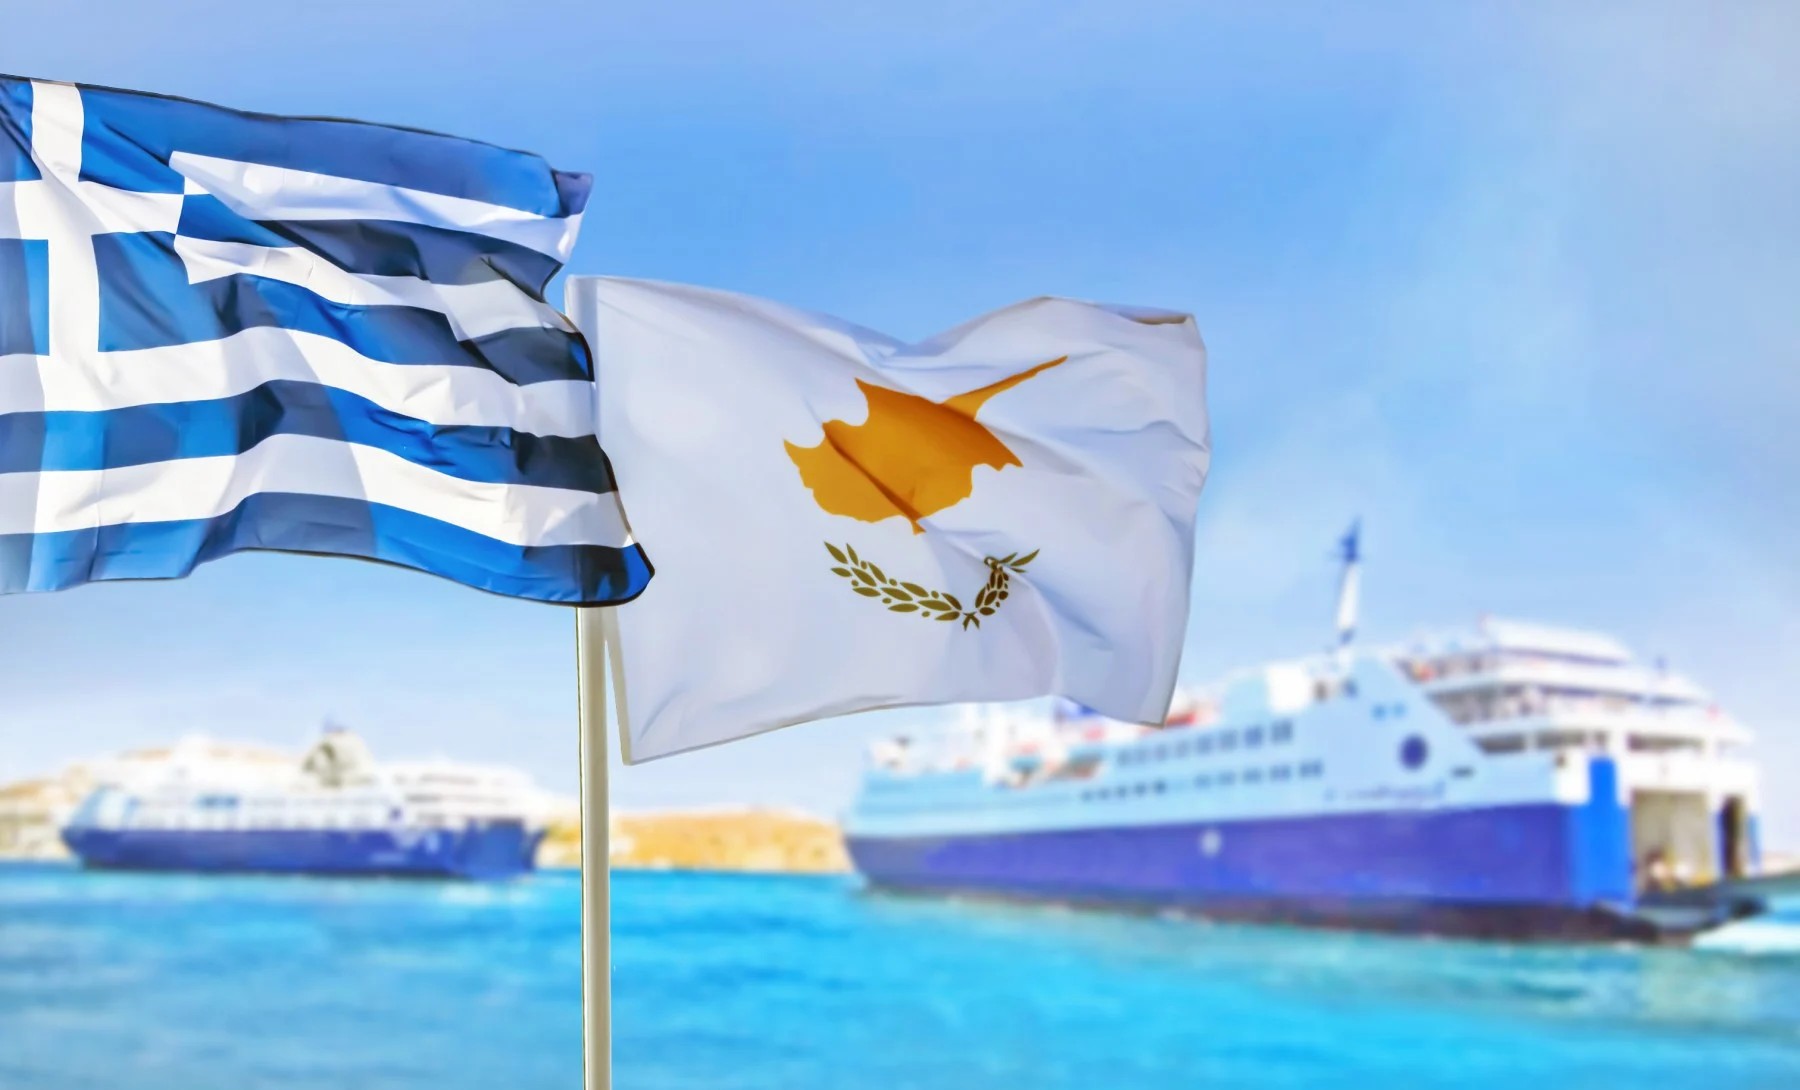 Μεγάλο ενδιαφέορν για την ακτοπλοϊκή σύνδεση Ελλάδας-Κύπρου! Μέσα σε μια μέρα έγιναν περισσότερες από 3.000 κρατήσεις